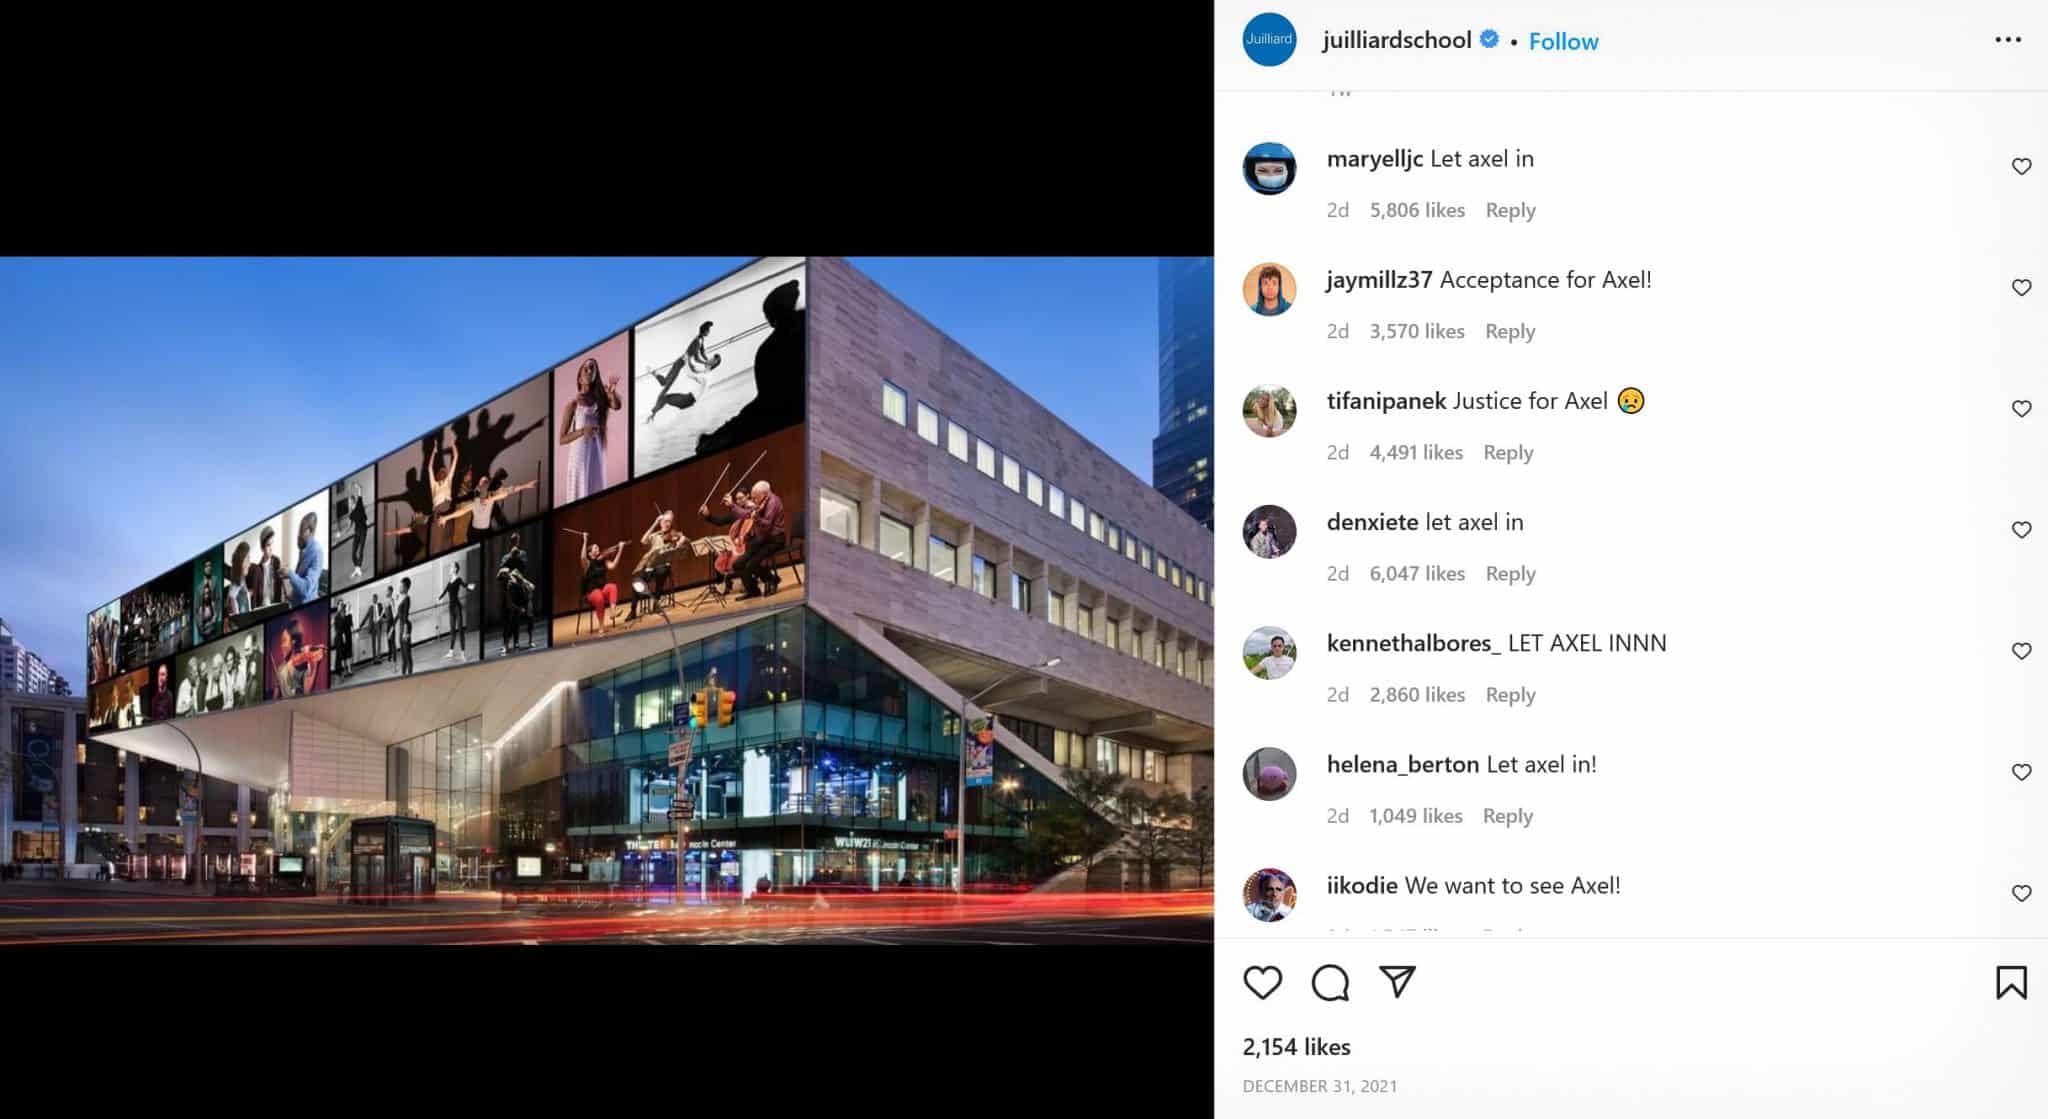 Juilliard School Instagram comments